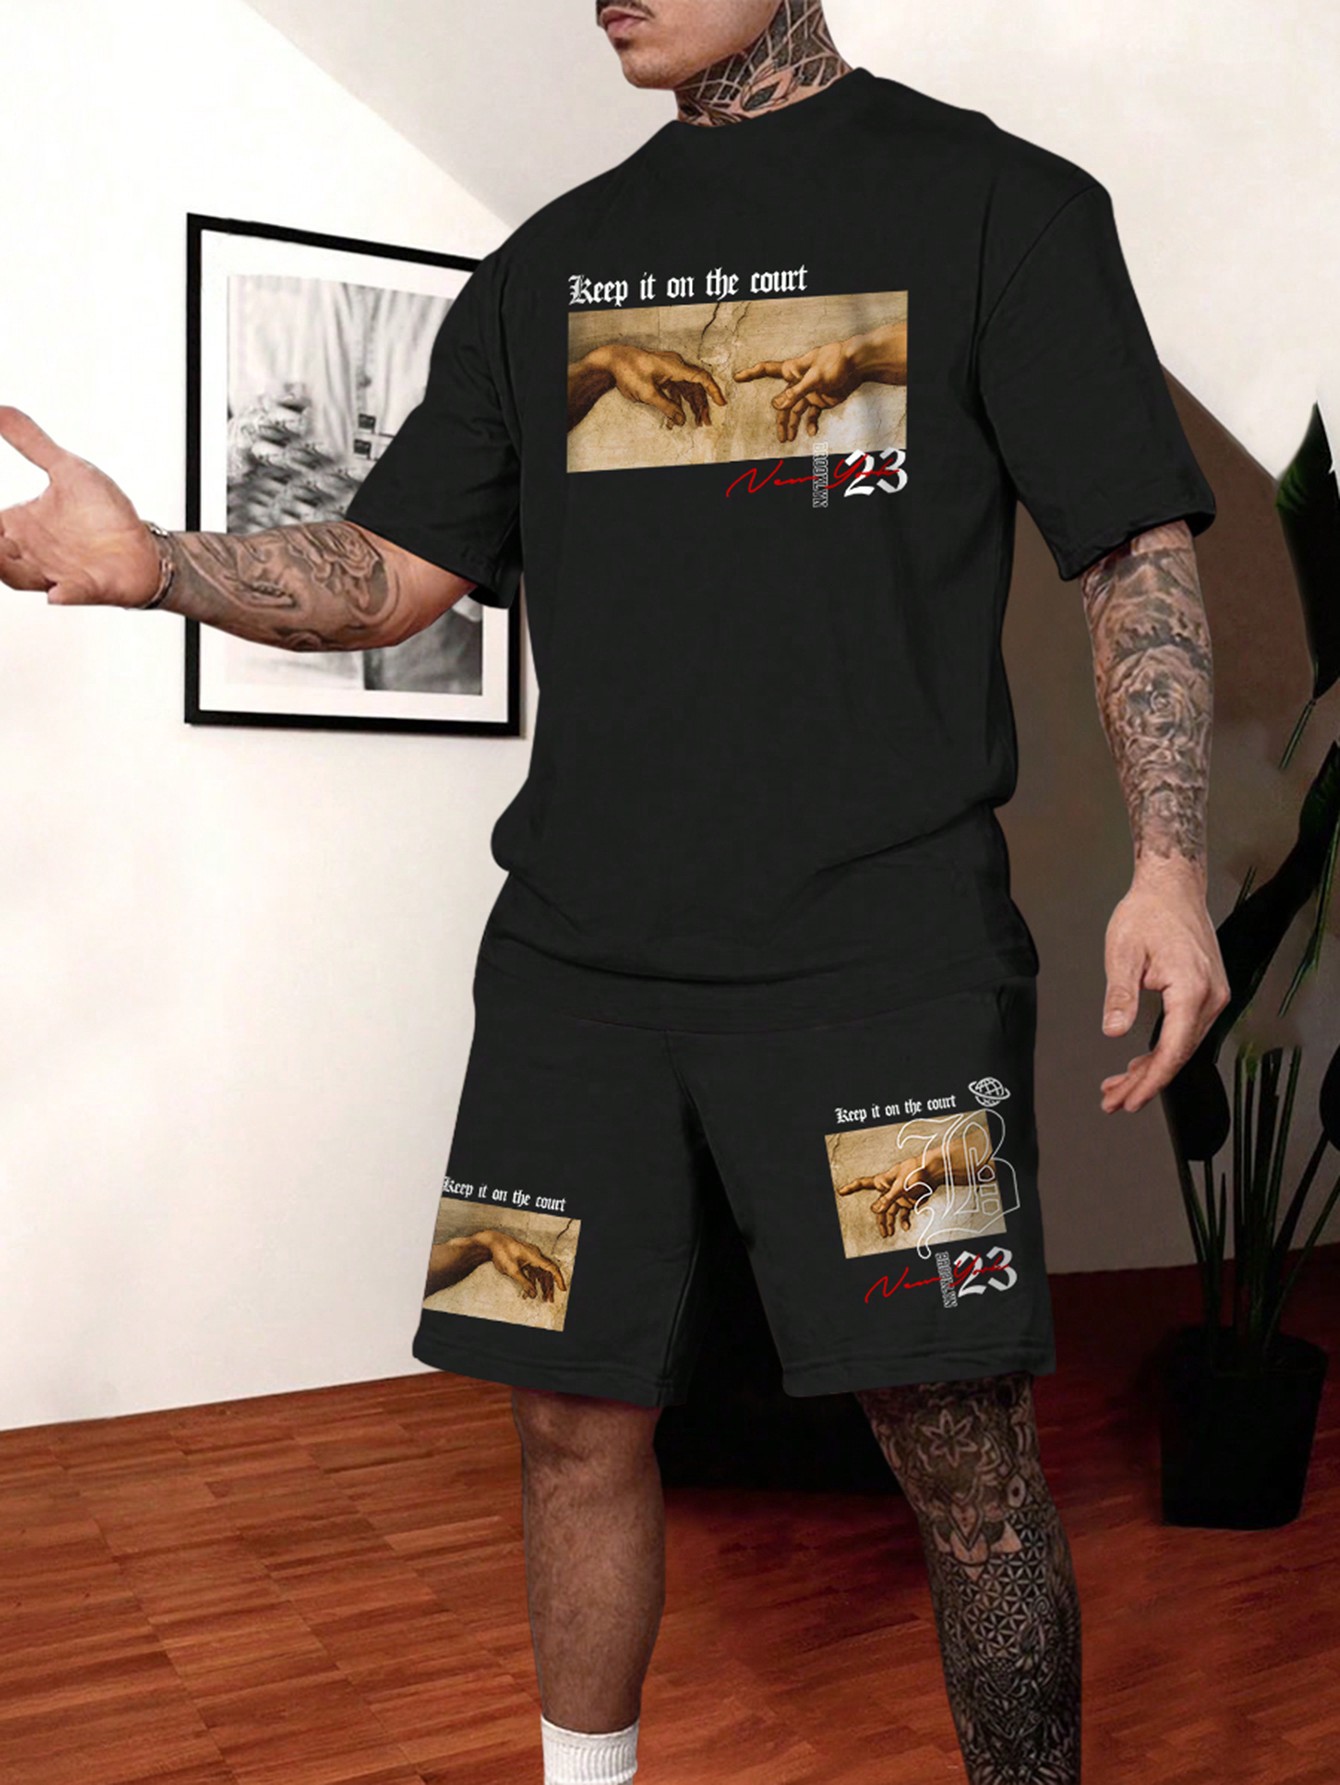 Мужская футболка с короткими рукавами и принтом масляной живописи Manfinity LEGND, черный